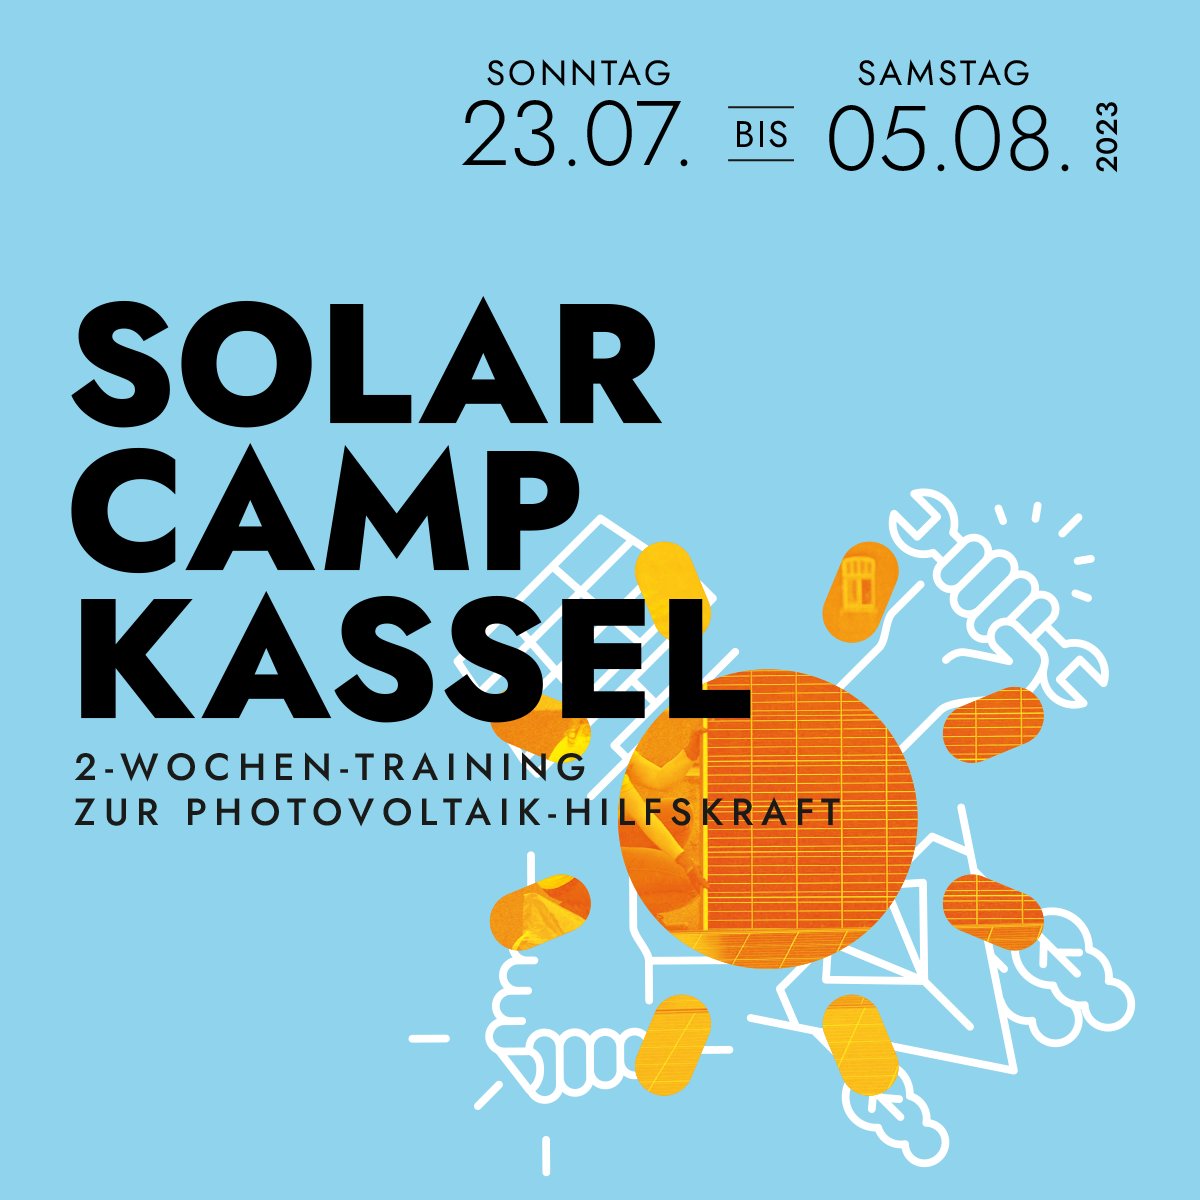 Wir haben getüftelt und gewerkelt – jetzt startet die Anmeldung für das #SolarCamp in #Kassel! 2 Wochen, 25 Menschen zwischen 16 und 30, Fulle und #PV – gute Mischung, oder?! Unbedingt weitererzählen!
solocal-energy.de/pm-job-mit-sin…